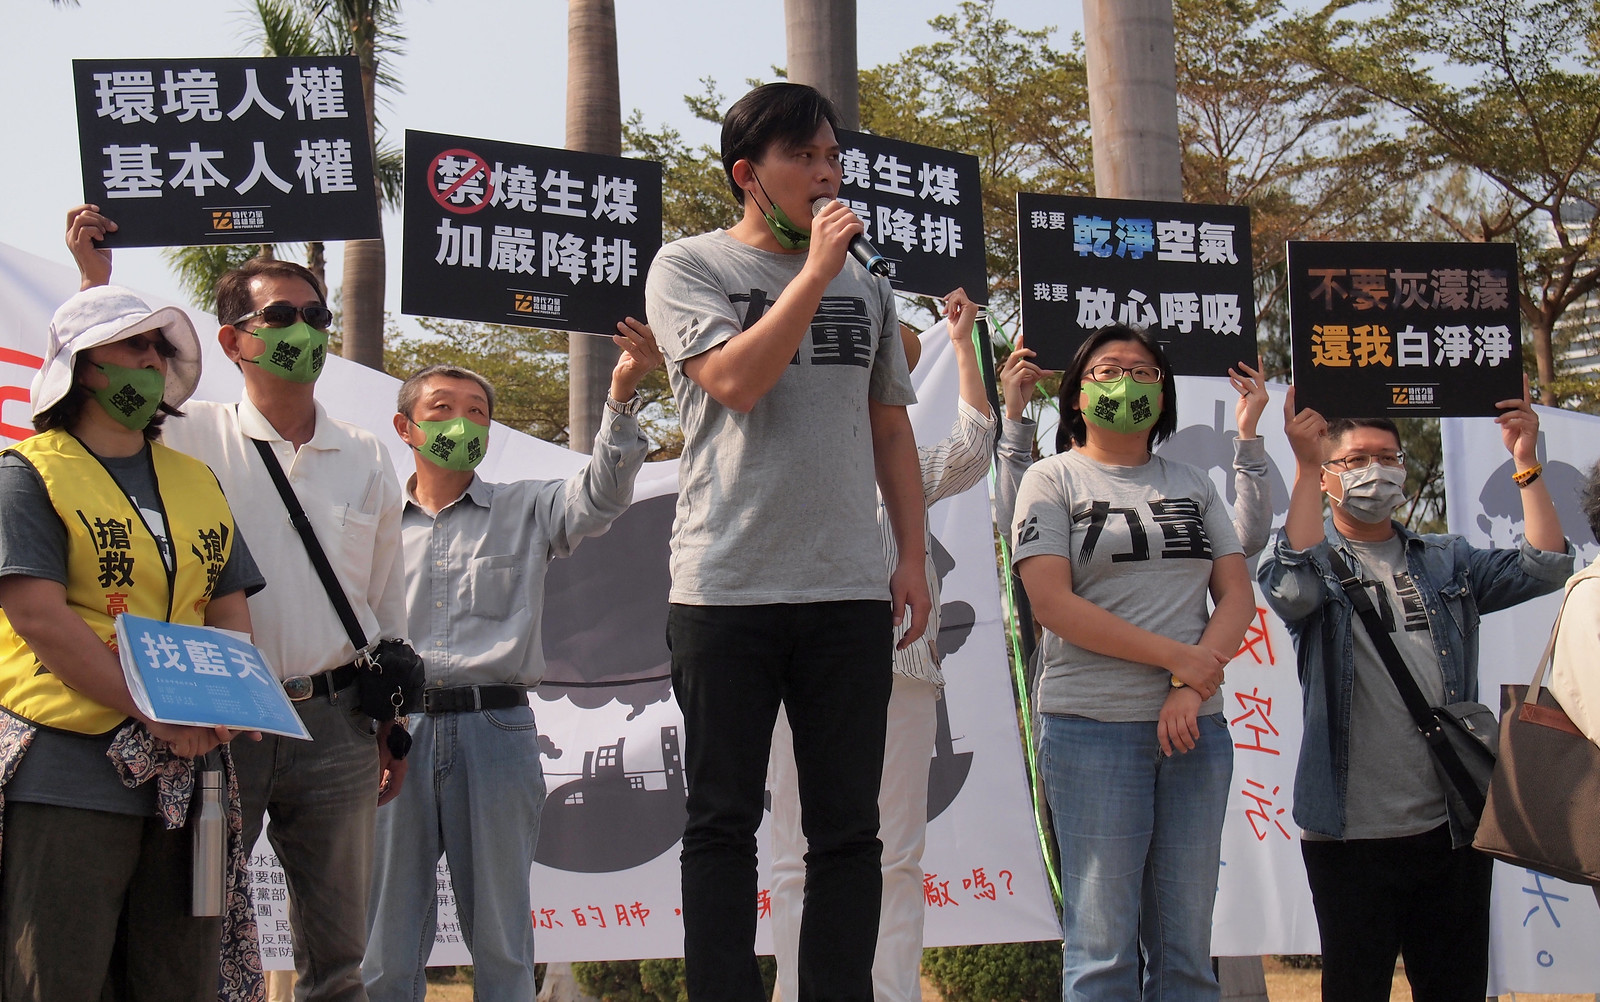 219高雄反空污遊行。黃國昌要求民進黨應讓空污法排入審議。攝影：李育琴。